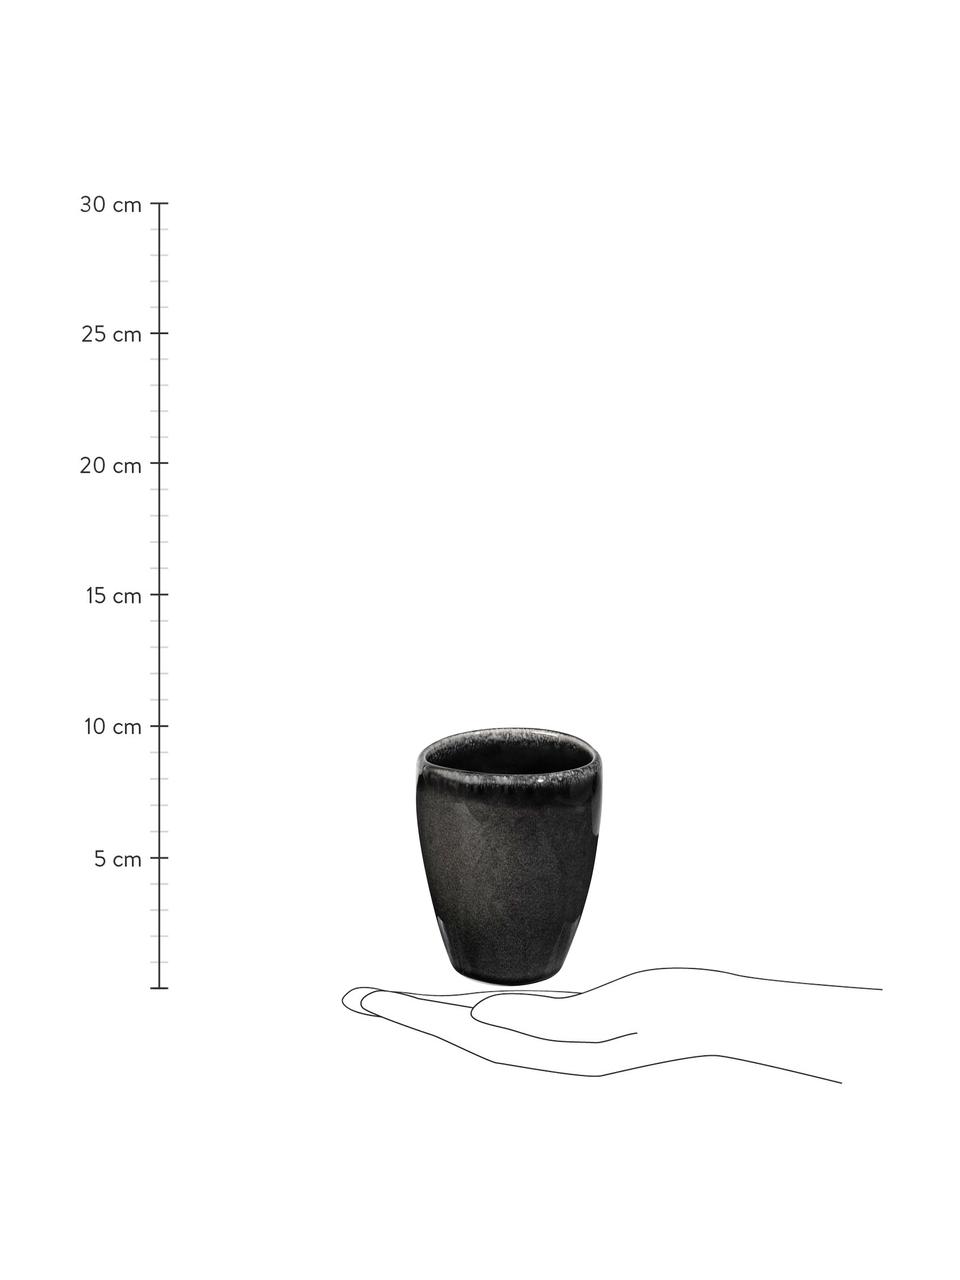 Ręcznie wykonany kubek Nordic Coal, 6 szt., Kamionka, Antracytowy, Ø 8 x W 10 cm, 250 ml